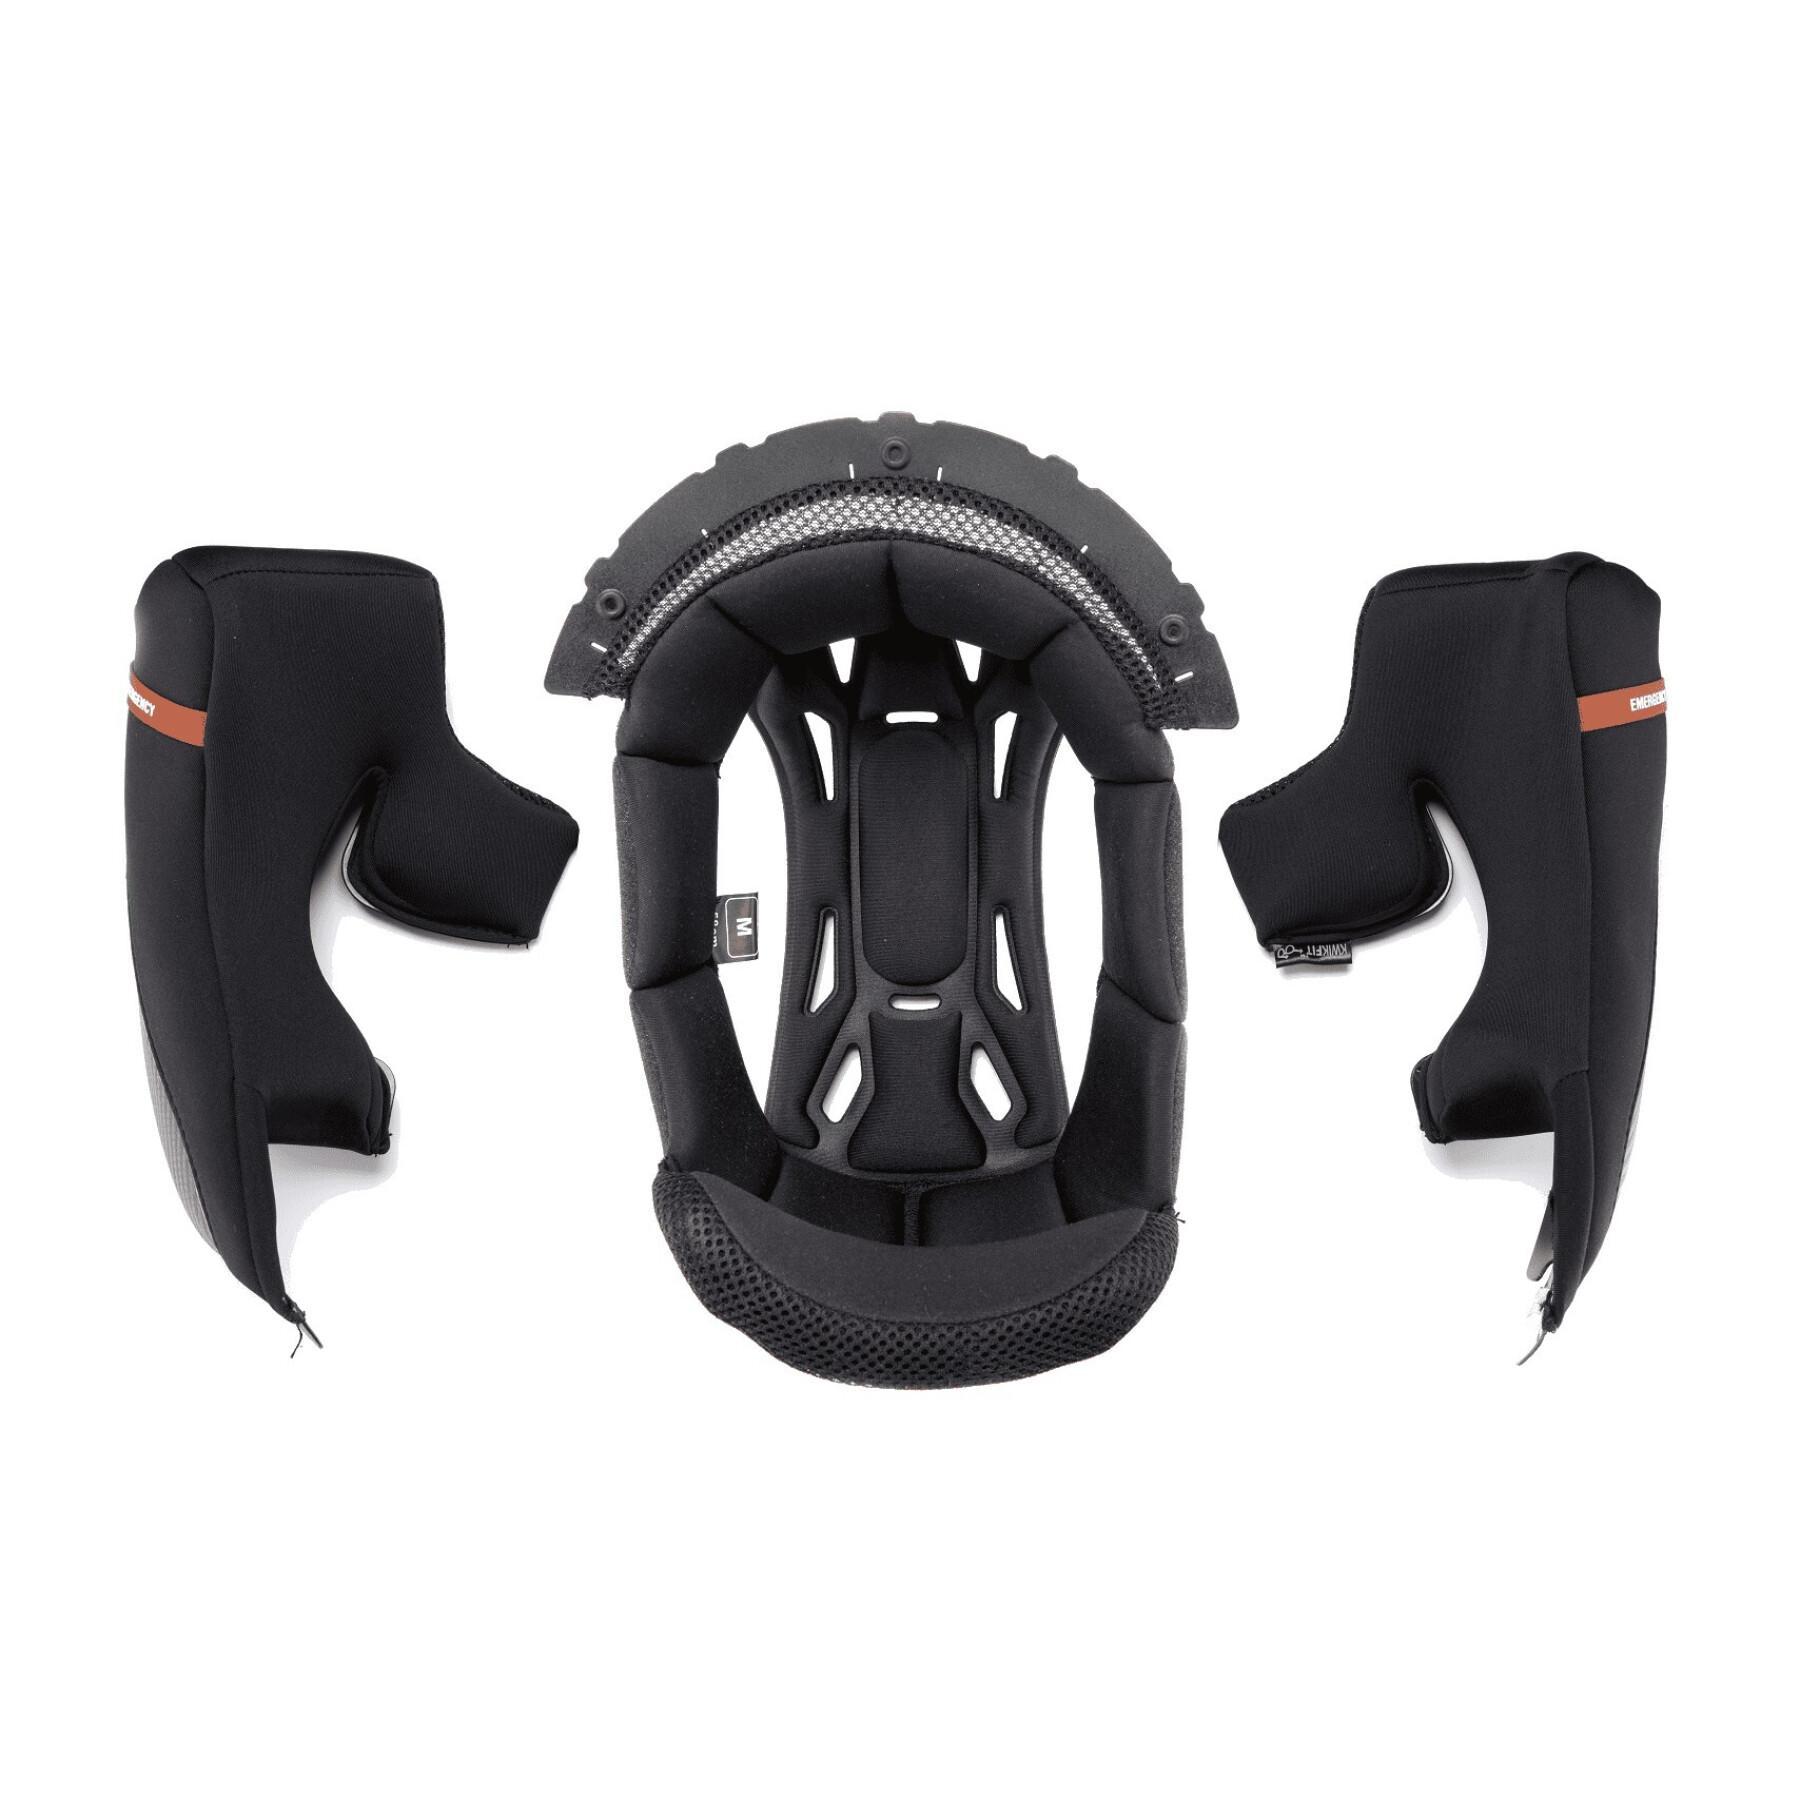 Standard motorcycle helmet foam Scorpion EXO-220